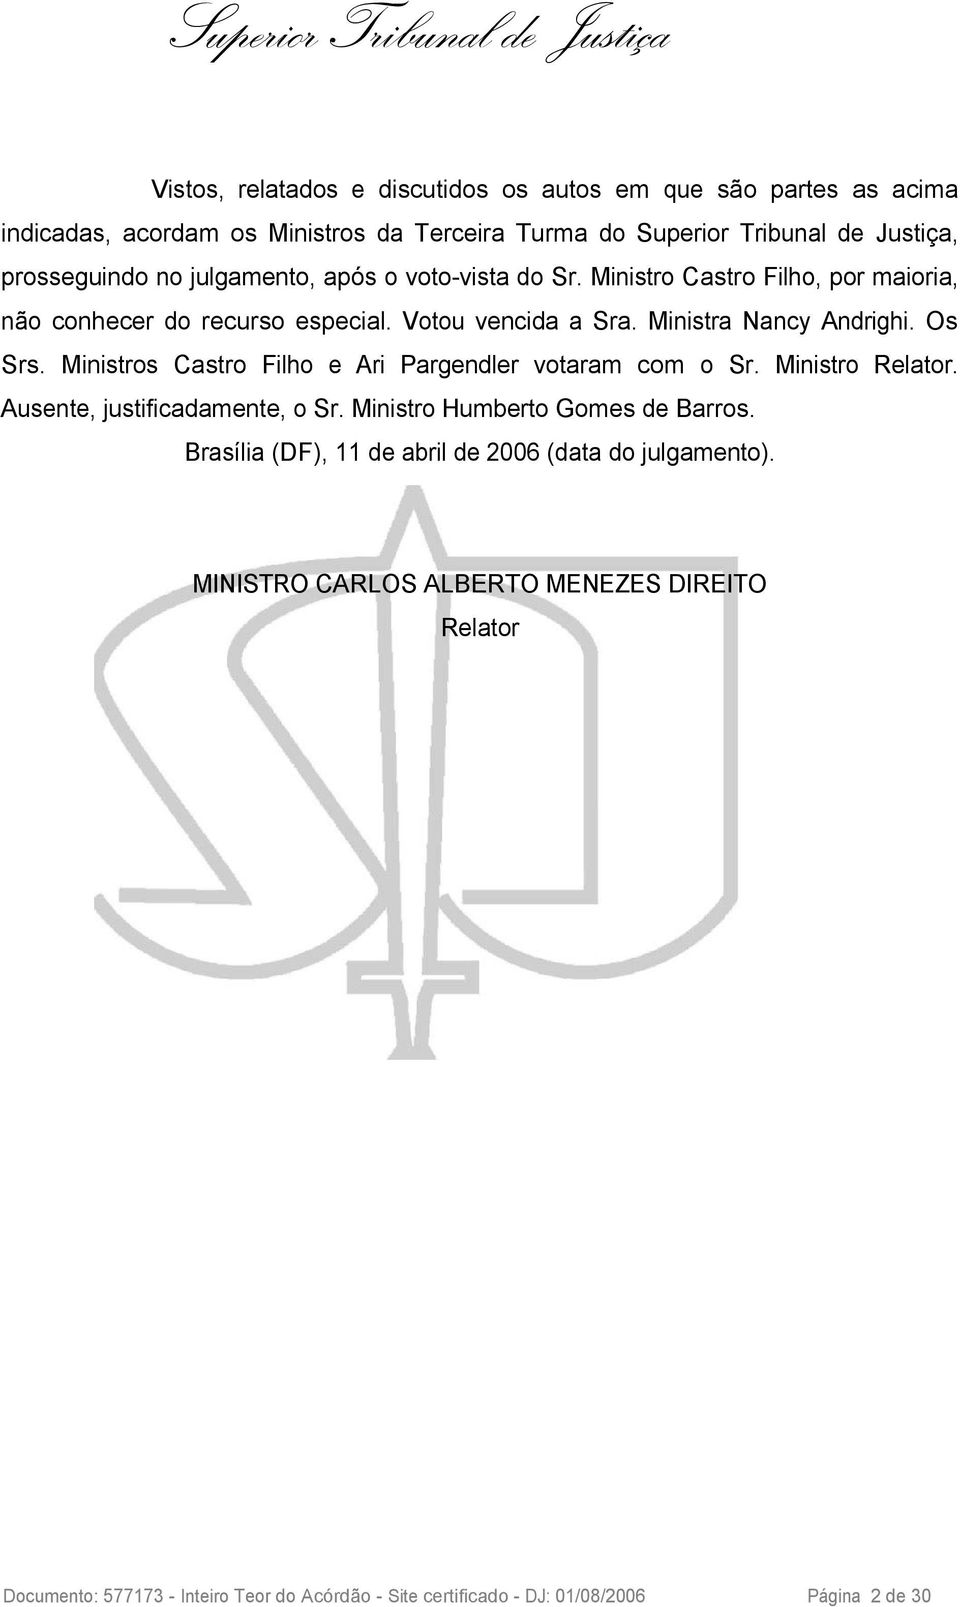 Ministros Castro Filho e Ari Pargendler votaram com o Sr. Ministro Relator. Ausente, justificadamente, o Sr. Ministro Humberto Gomes de Barros.